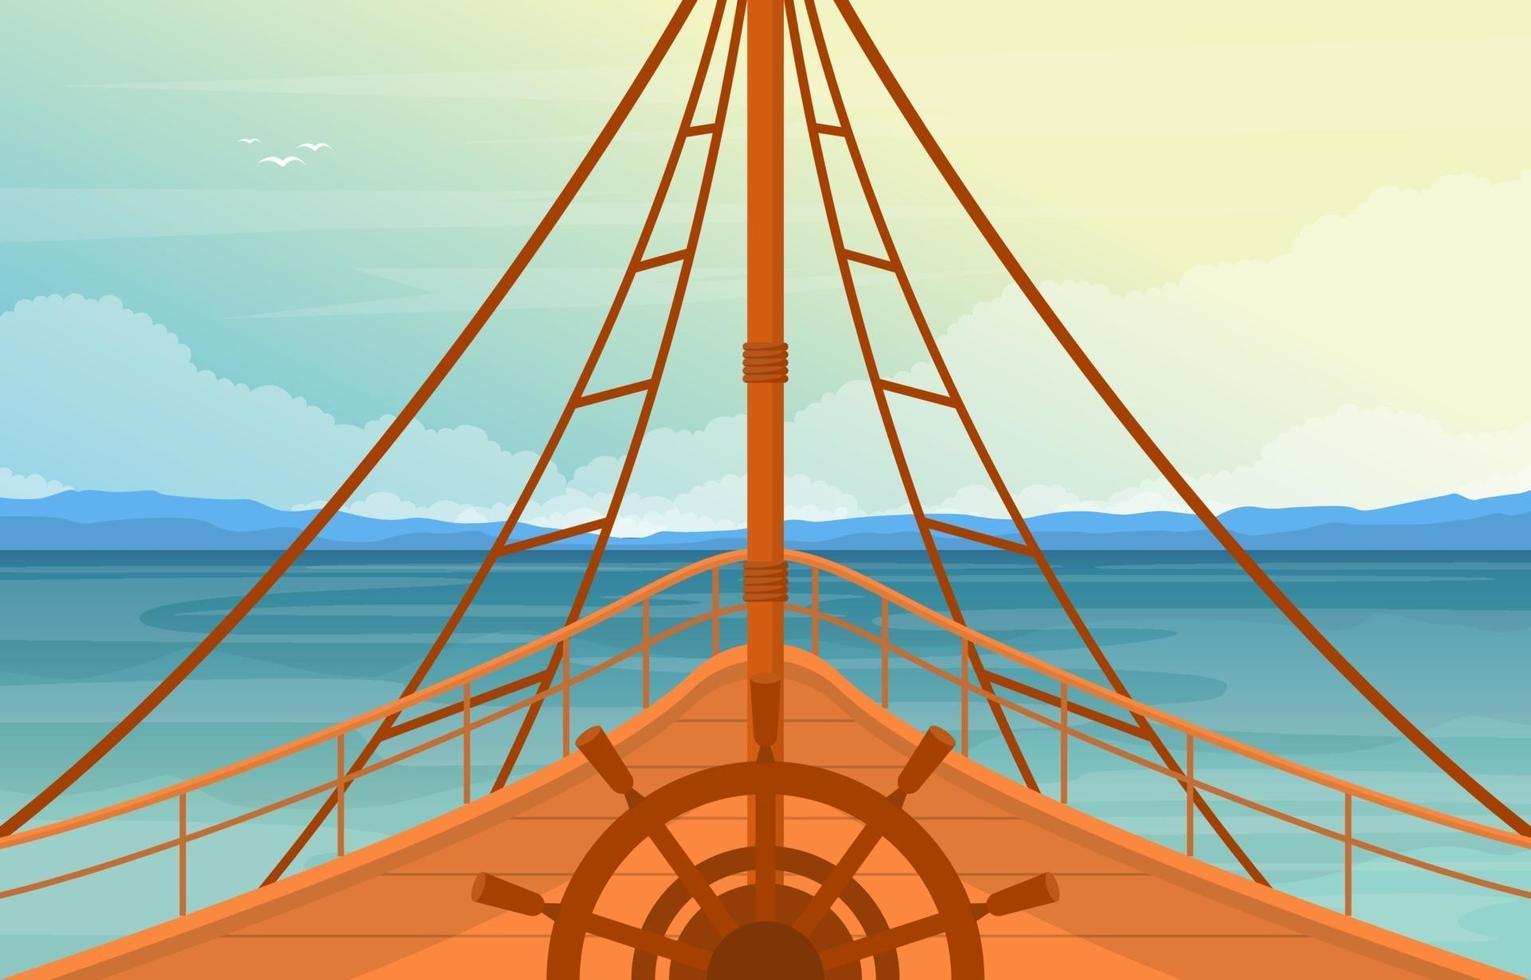 capitão convés do navio com roda de navegação e ilustração do horizonte do oceano vetor